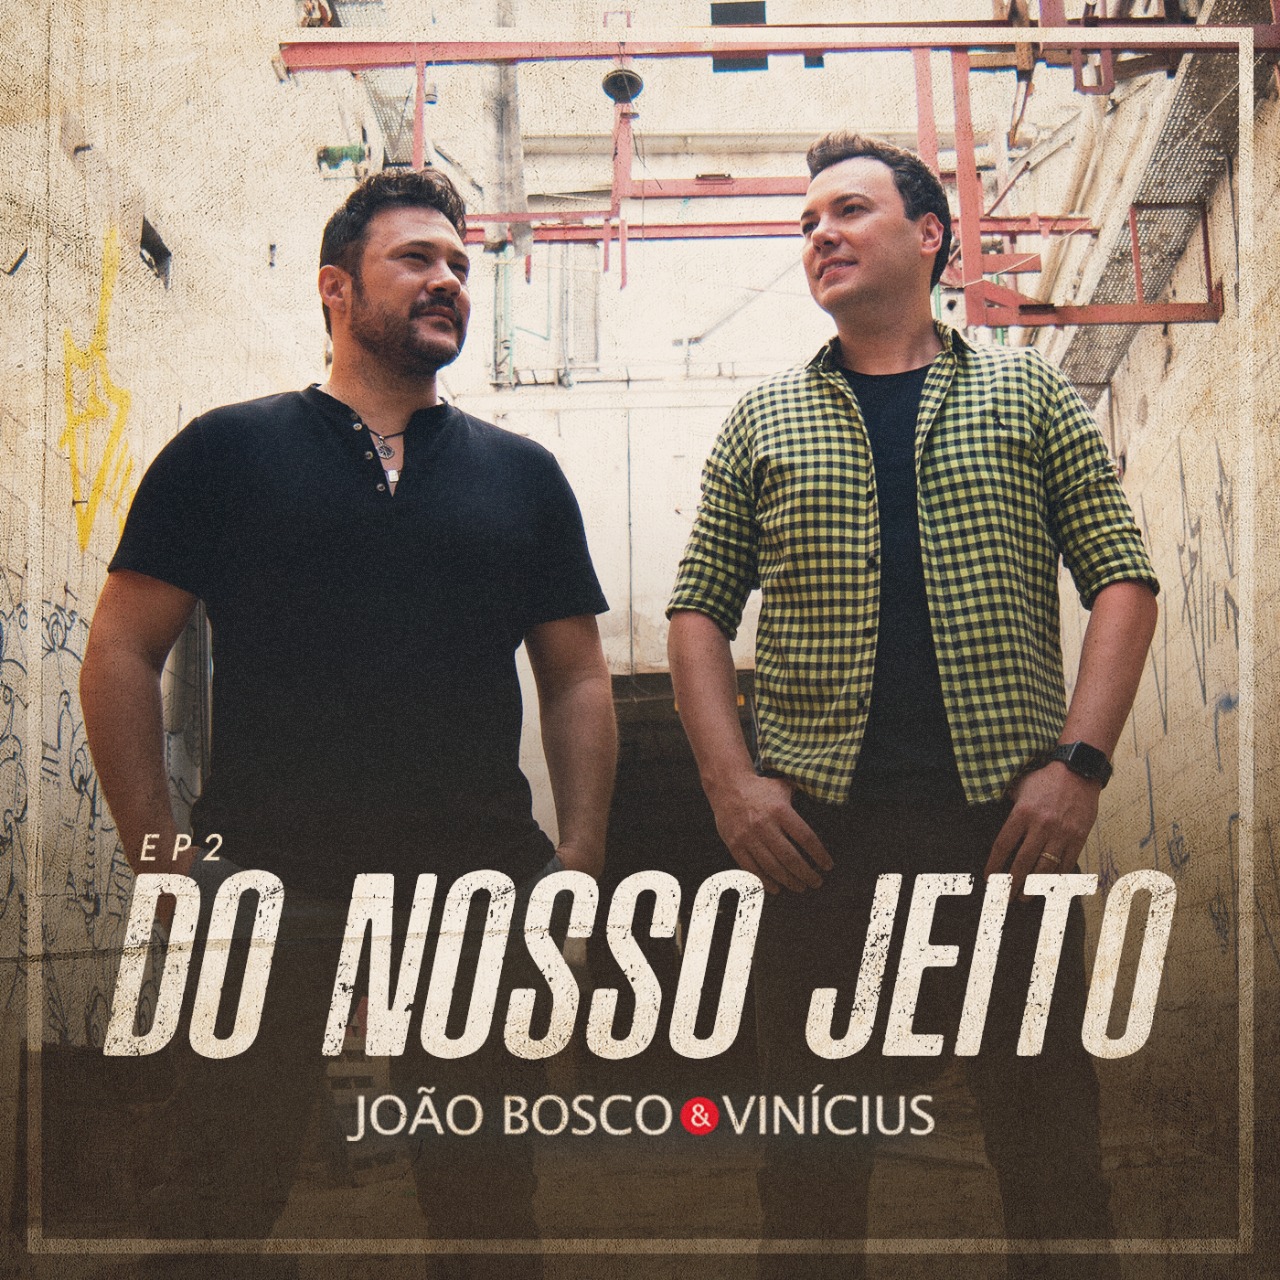 Com inéditas, João Bosco & Vinícius lançam EP 2 "Do Nosso Jeito" 41